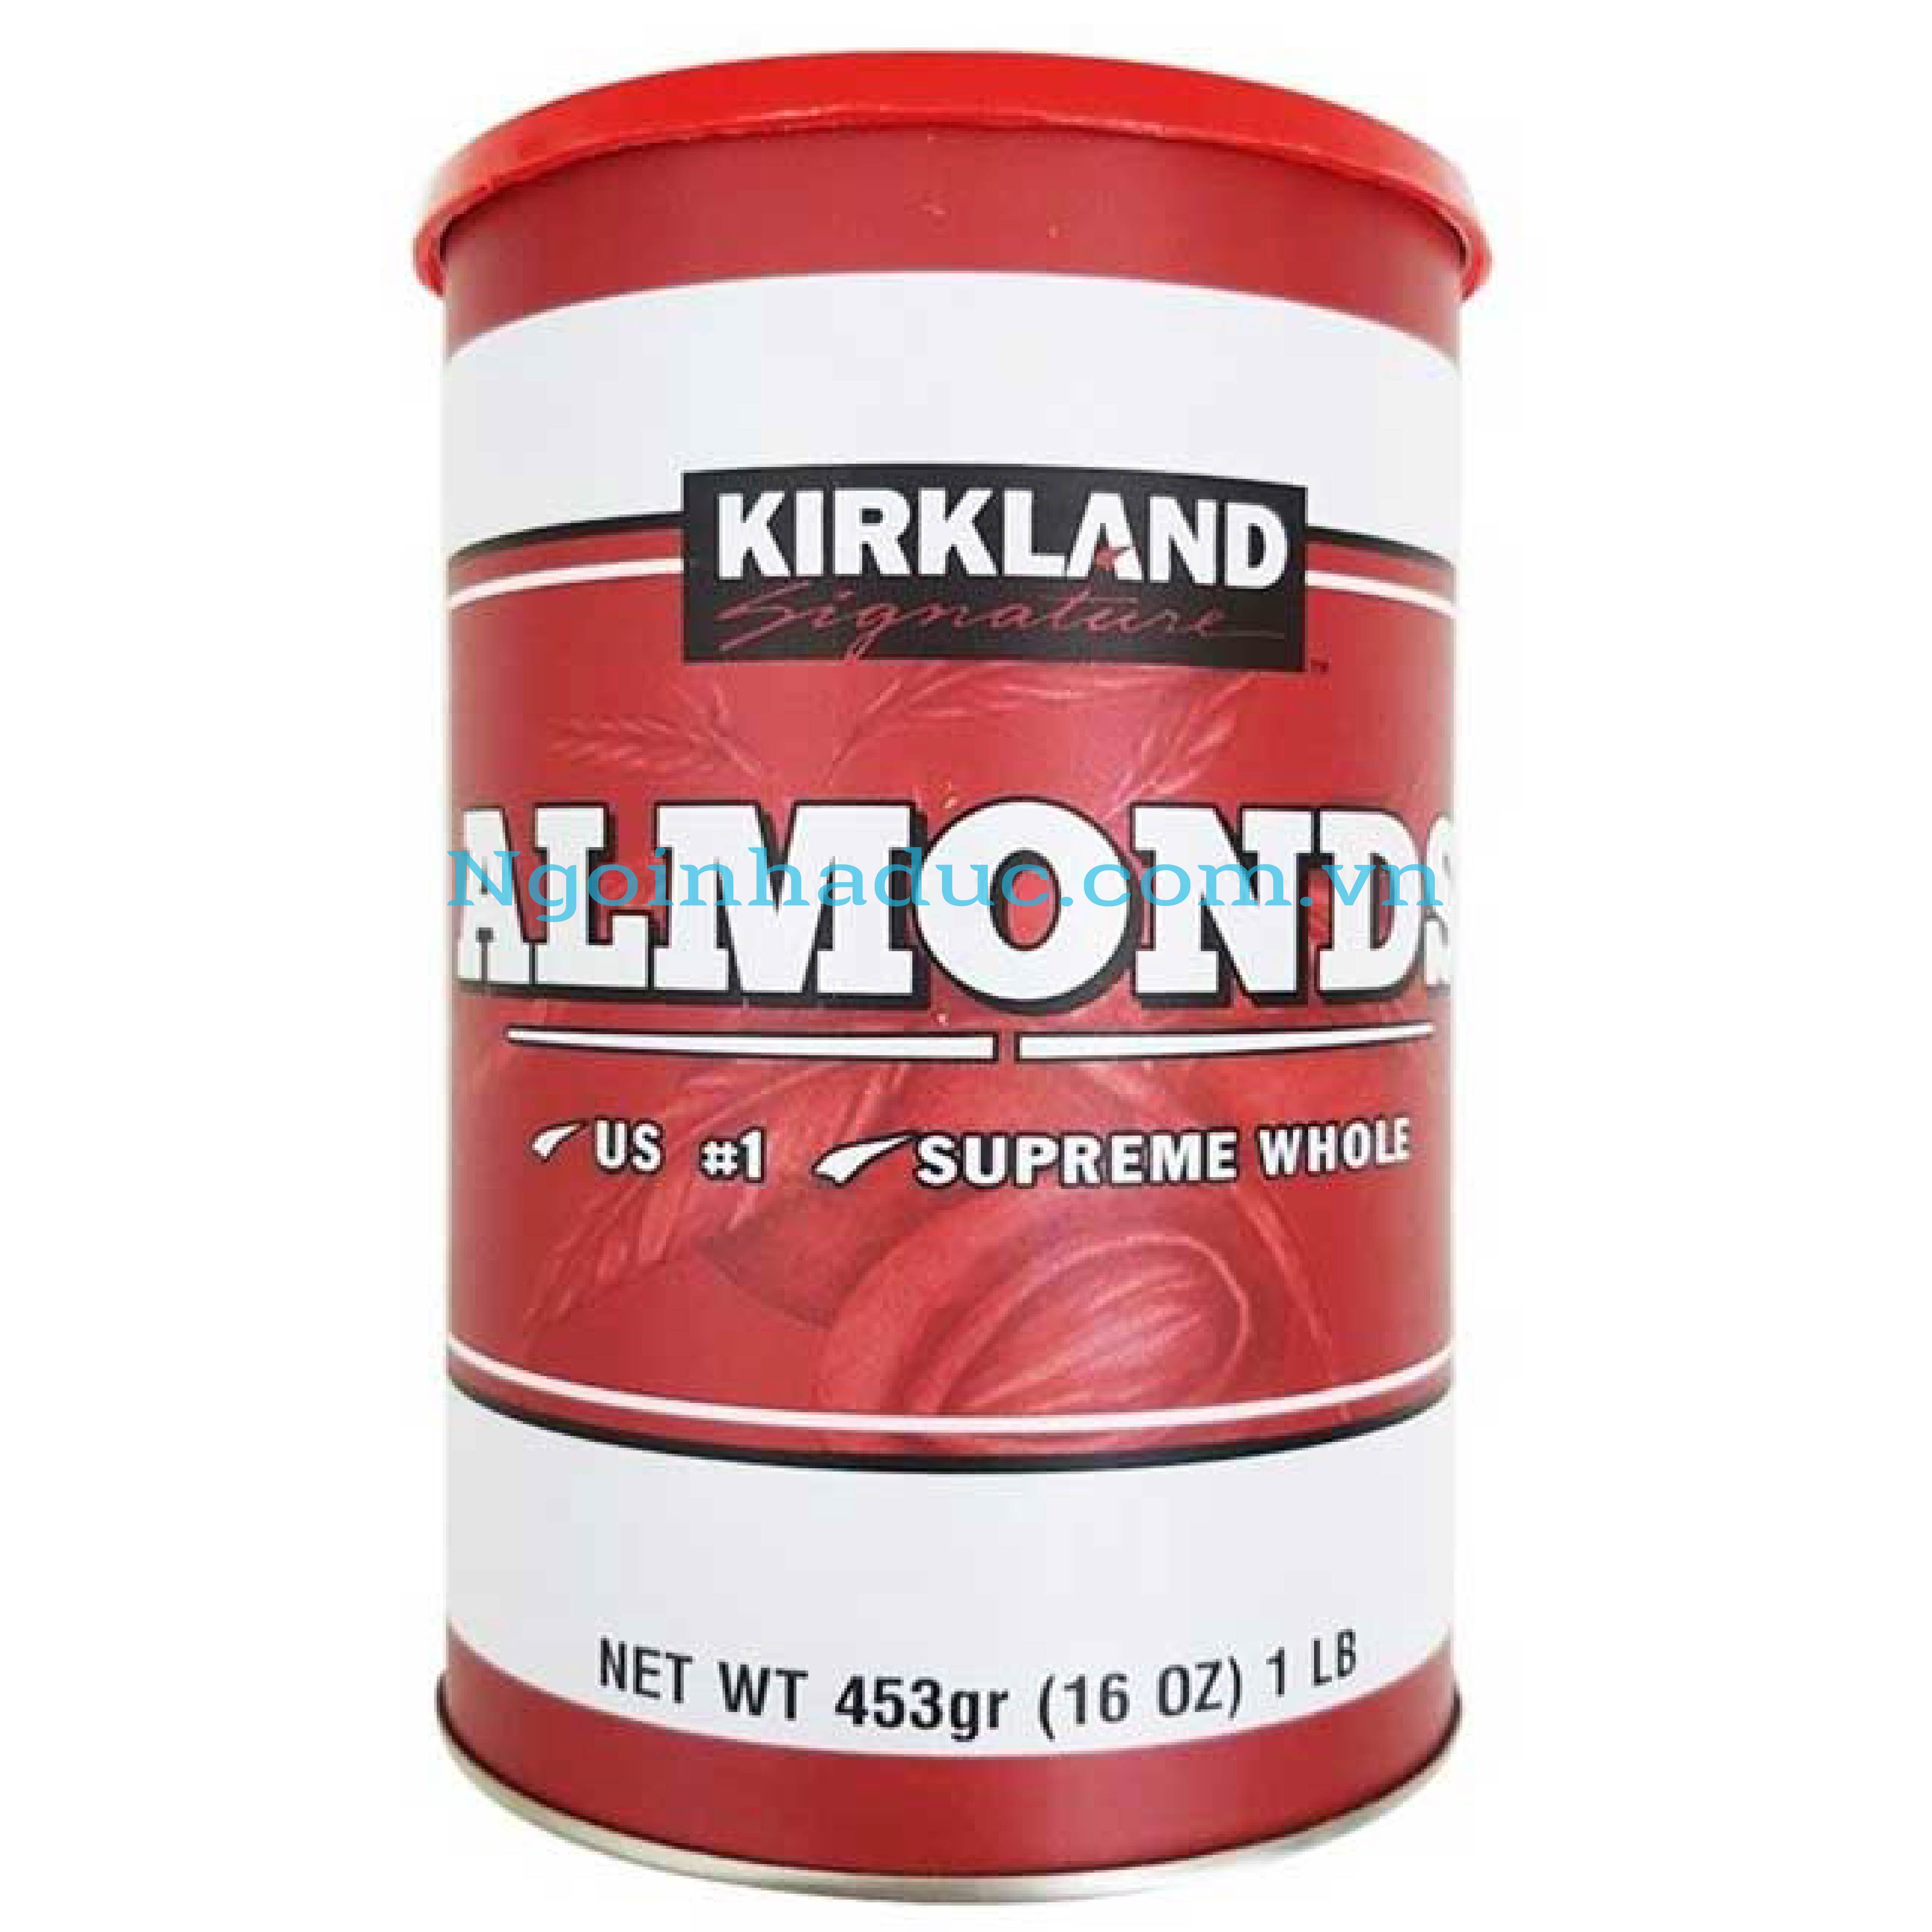 Hạt hạnh nhân tách vỏ Almonds Kirkland - Mỹ (hộp 453g)